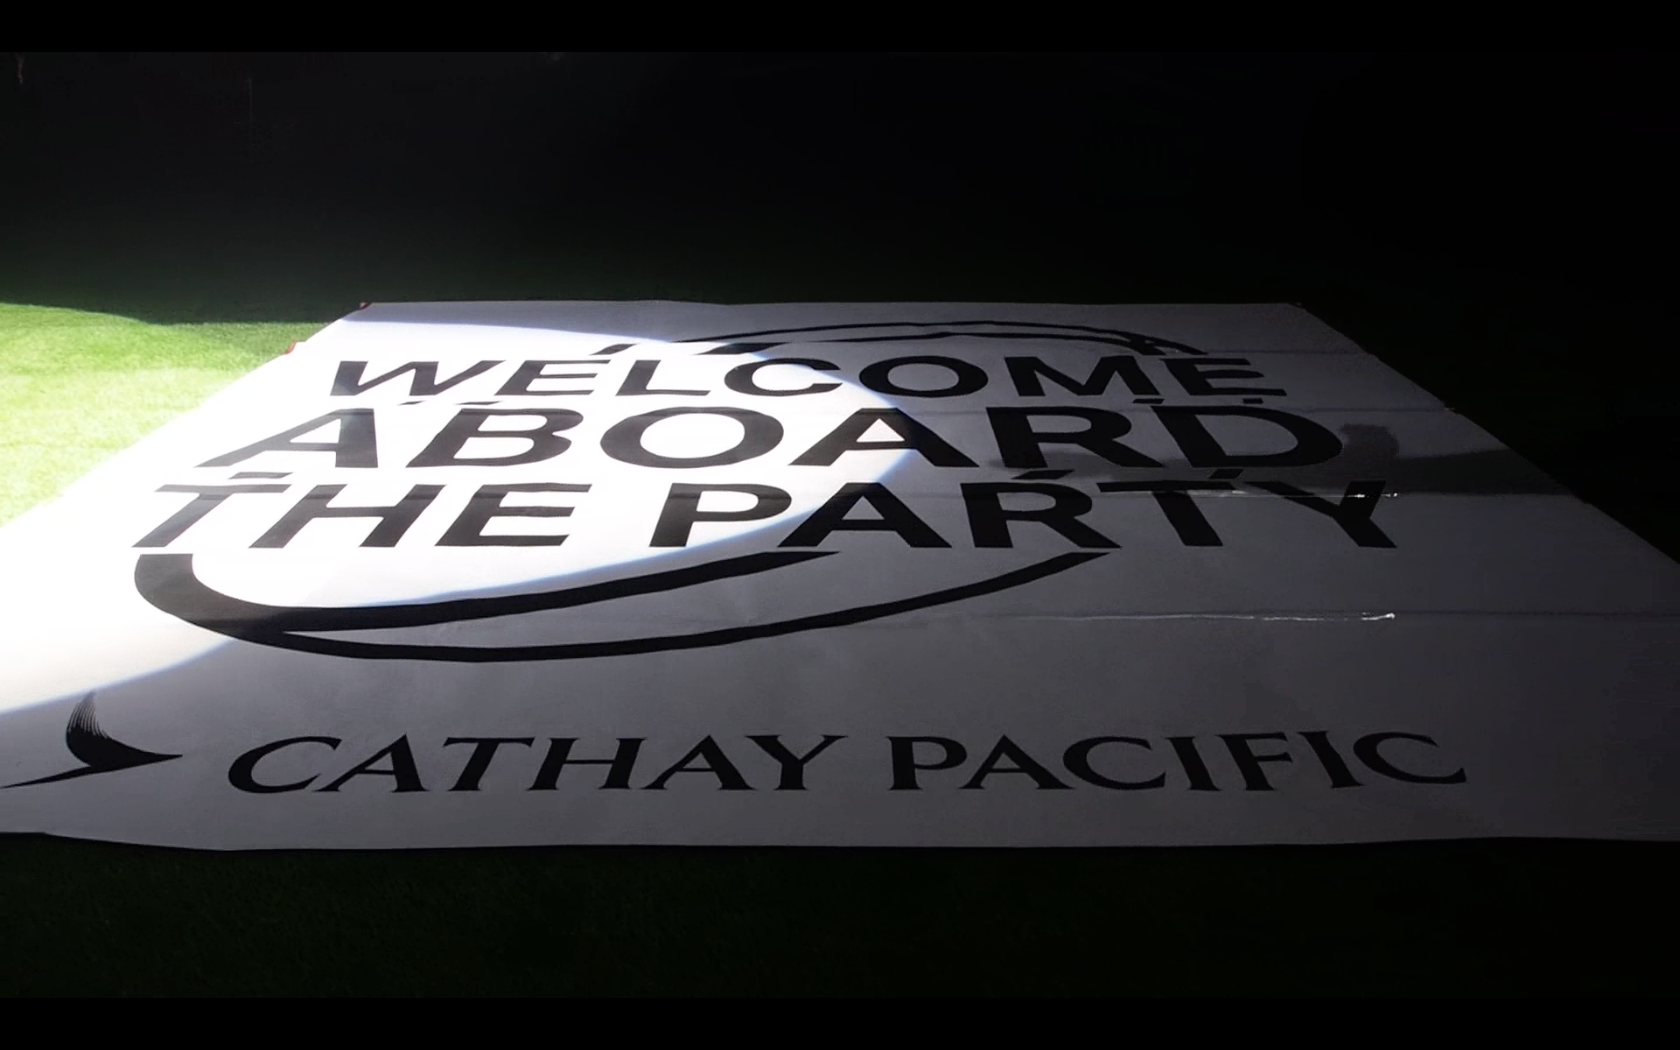 Cathay Pacific Hong Kong Rugby Sevens lockup